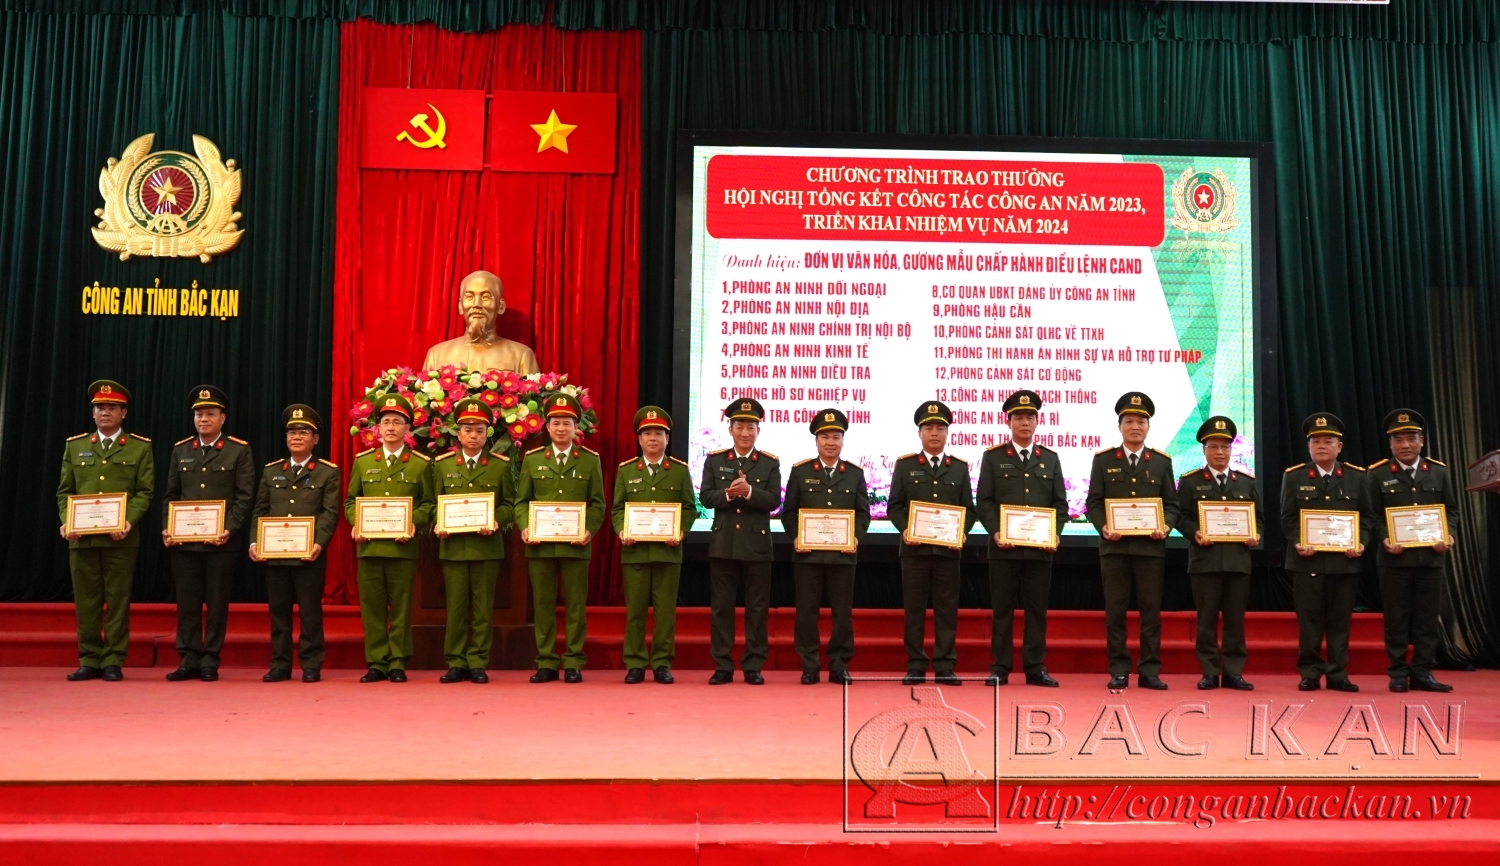 10 Đại tá Hà Trọng Trung – Phó Giám đốc Công an tỉnh trao danh hiệu “Đơn vị văn hoá, gương mẫu, chấp hành điều lệnh Công an nhân dân”